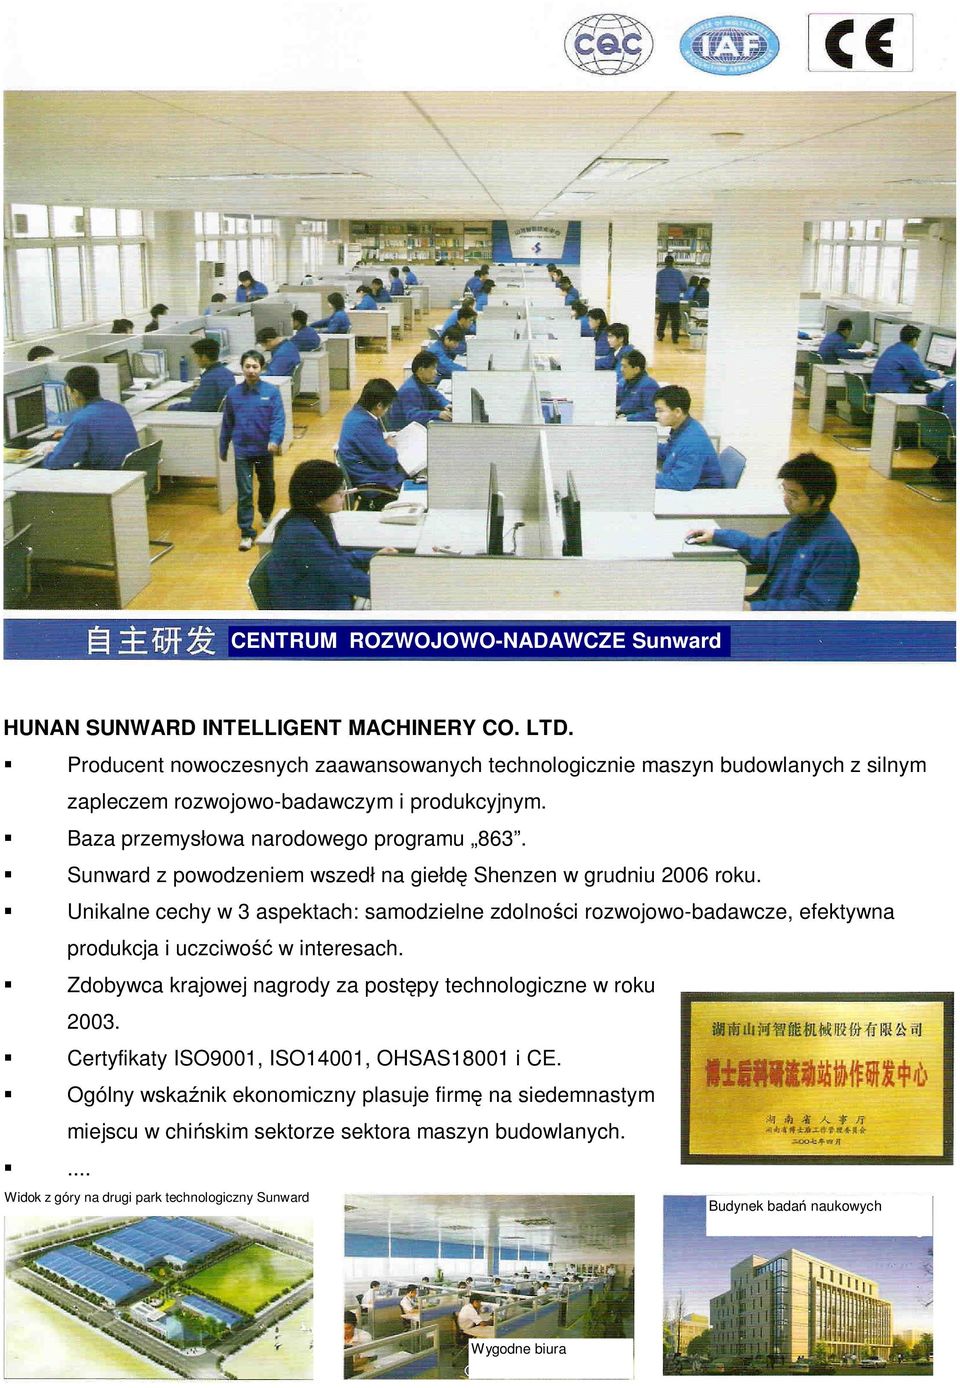 Sunward z powodzeniem wszedł na giełdę Shenzen w grudniu 2006 roku. Unikalne cechy w 3 aspektach: samodzielne zdolności rozwojowo-badawcze, efektywna produkcja i uczciwość w interesach.